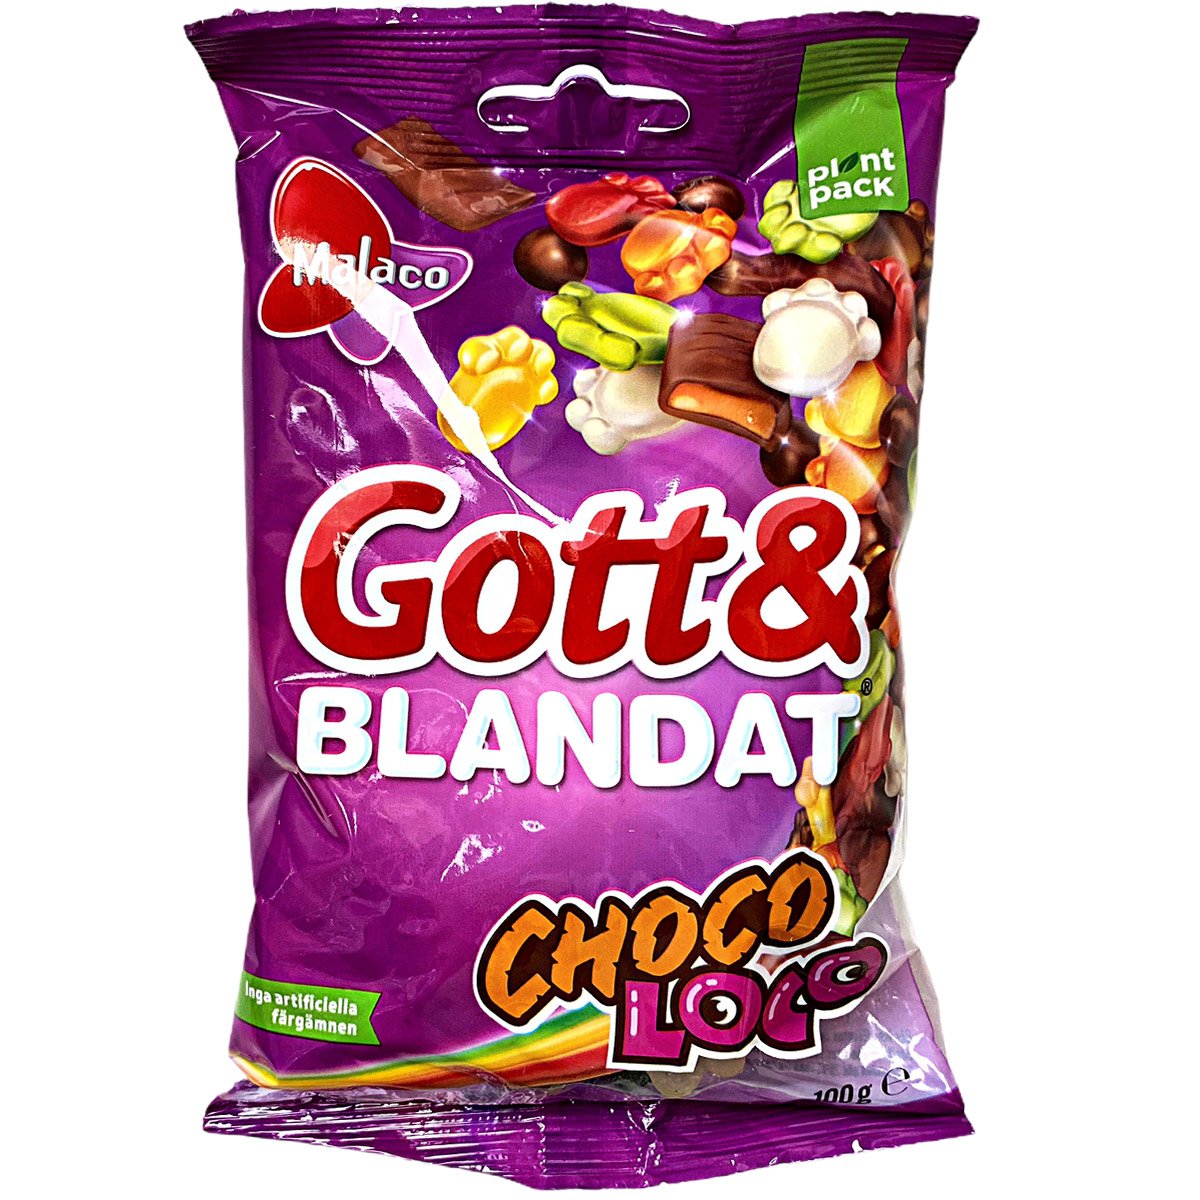 Malaco Gott & Blandat Choco Loco (100g) 1